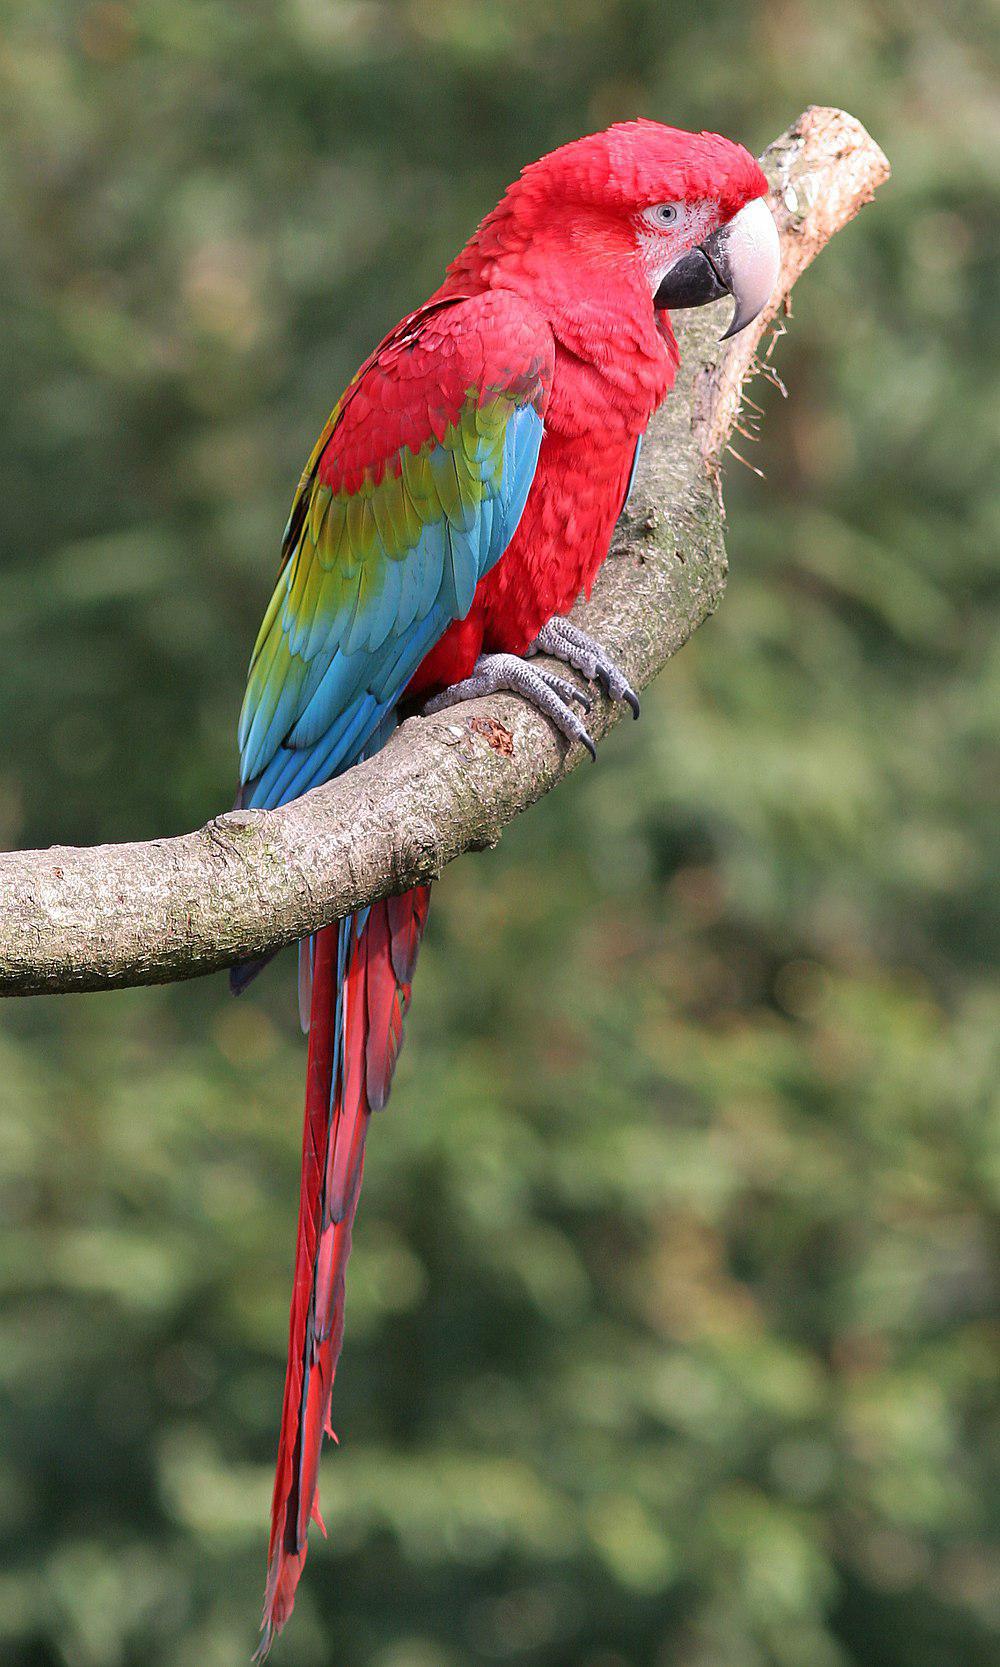 小金刚鹦鹉 / Red-and-green Macaw / Ara chloropterus